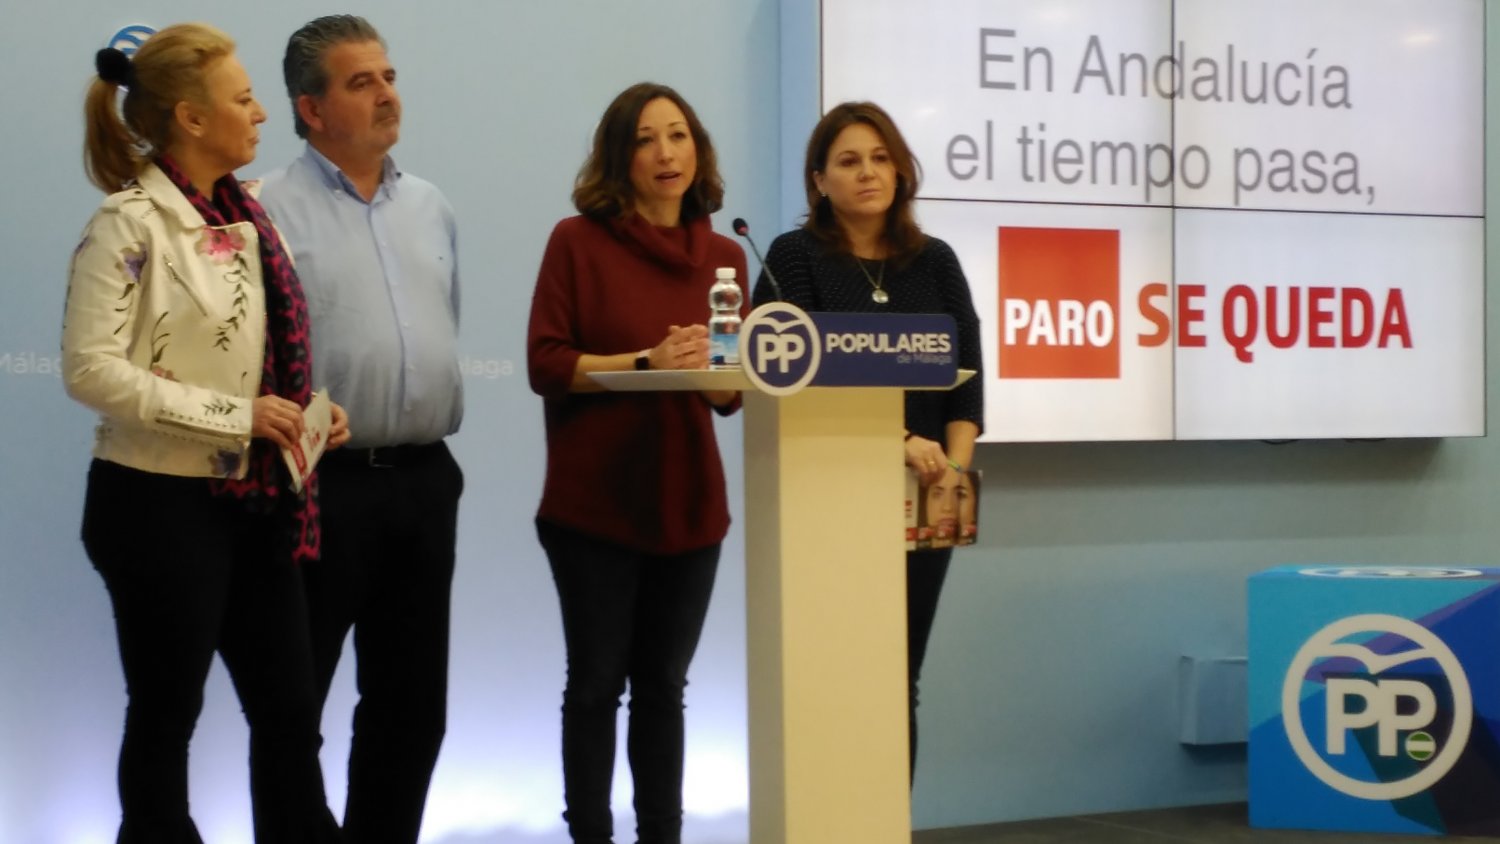 El PP pone en marcha una campaña en Andalucía para alcanzar los 600.000 empleos